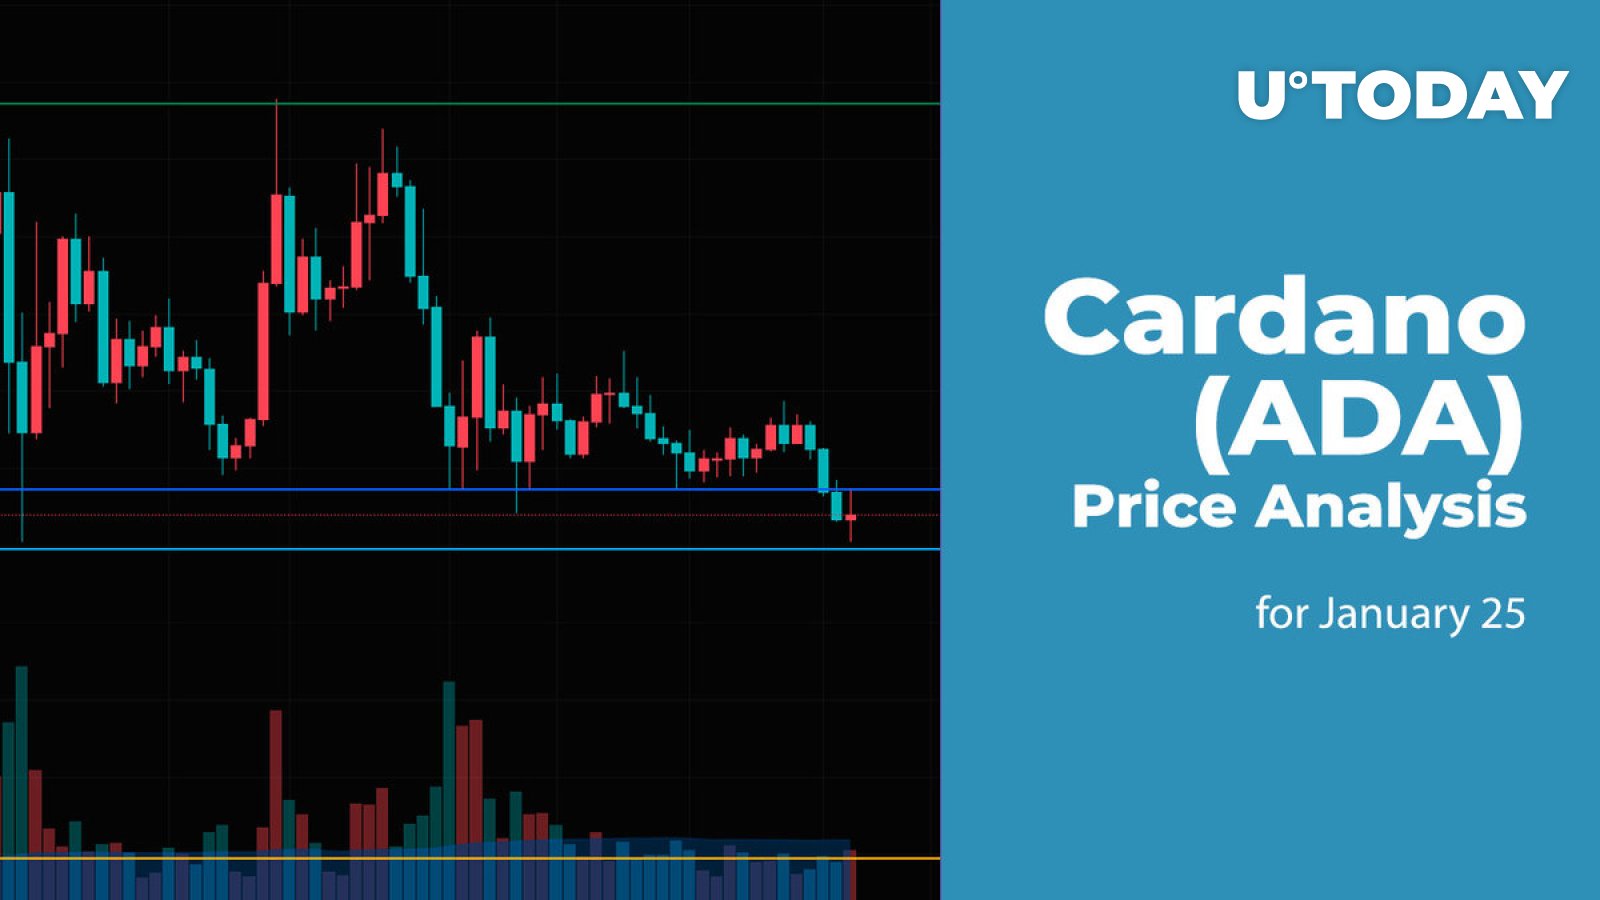 Cardano (ADA) Price Analysis for January 25